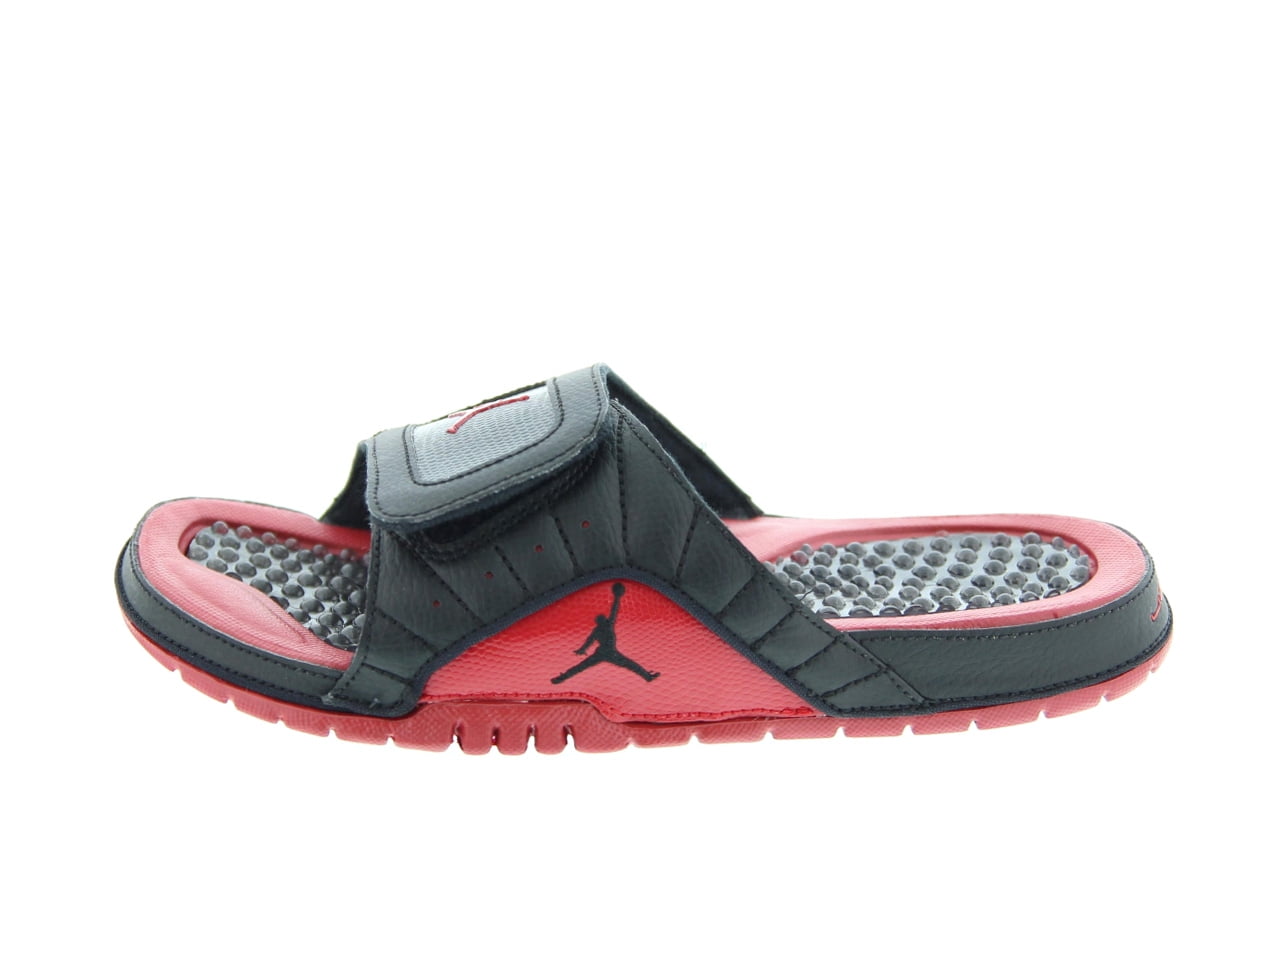 Jordan slippers for men price in bd black & white